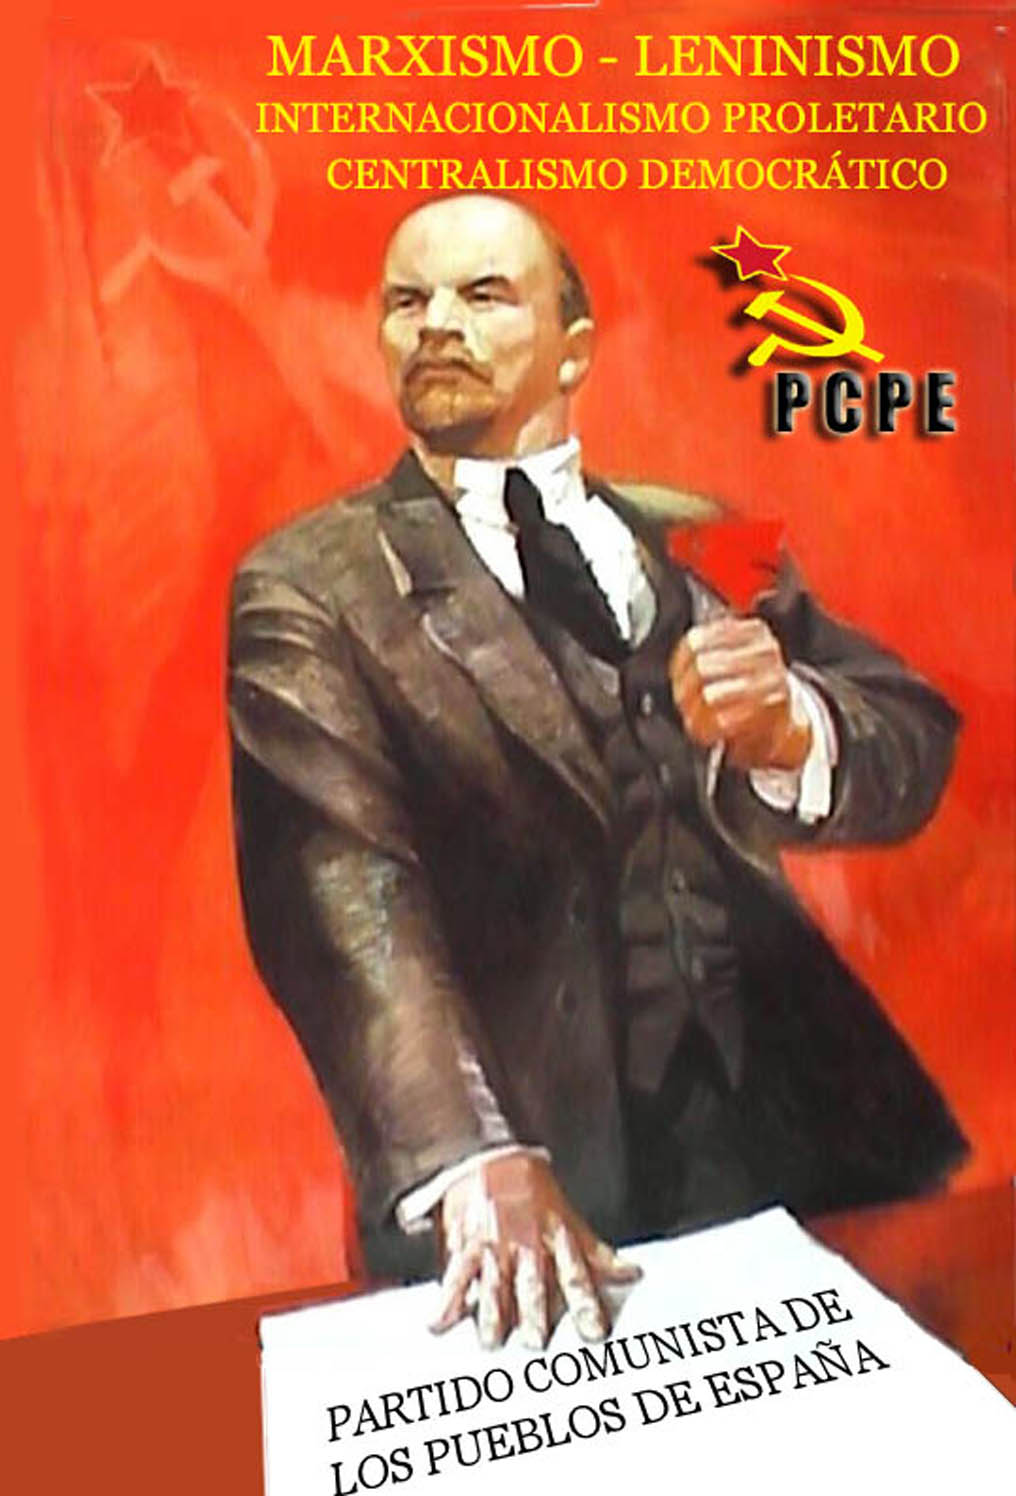 Открытки с днем рождения ленина. Ленин победа коммунизма неизбежна. Коммунистические плакаты с Лениным.